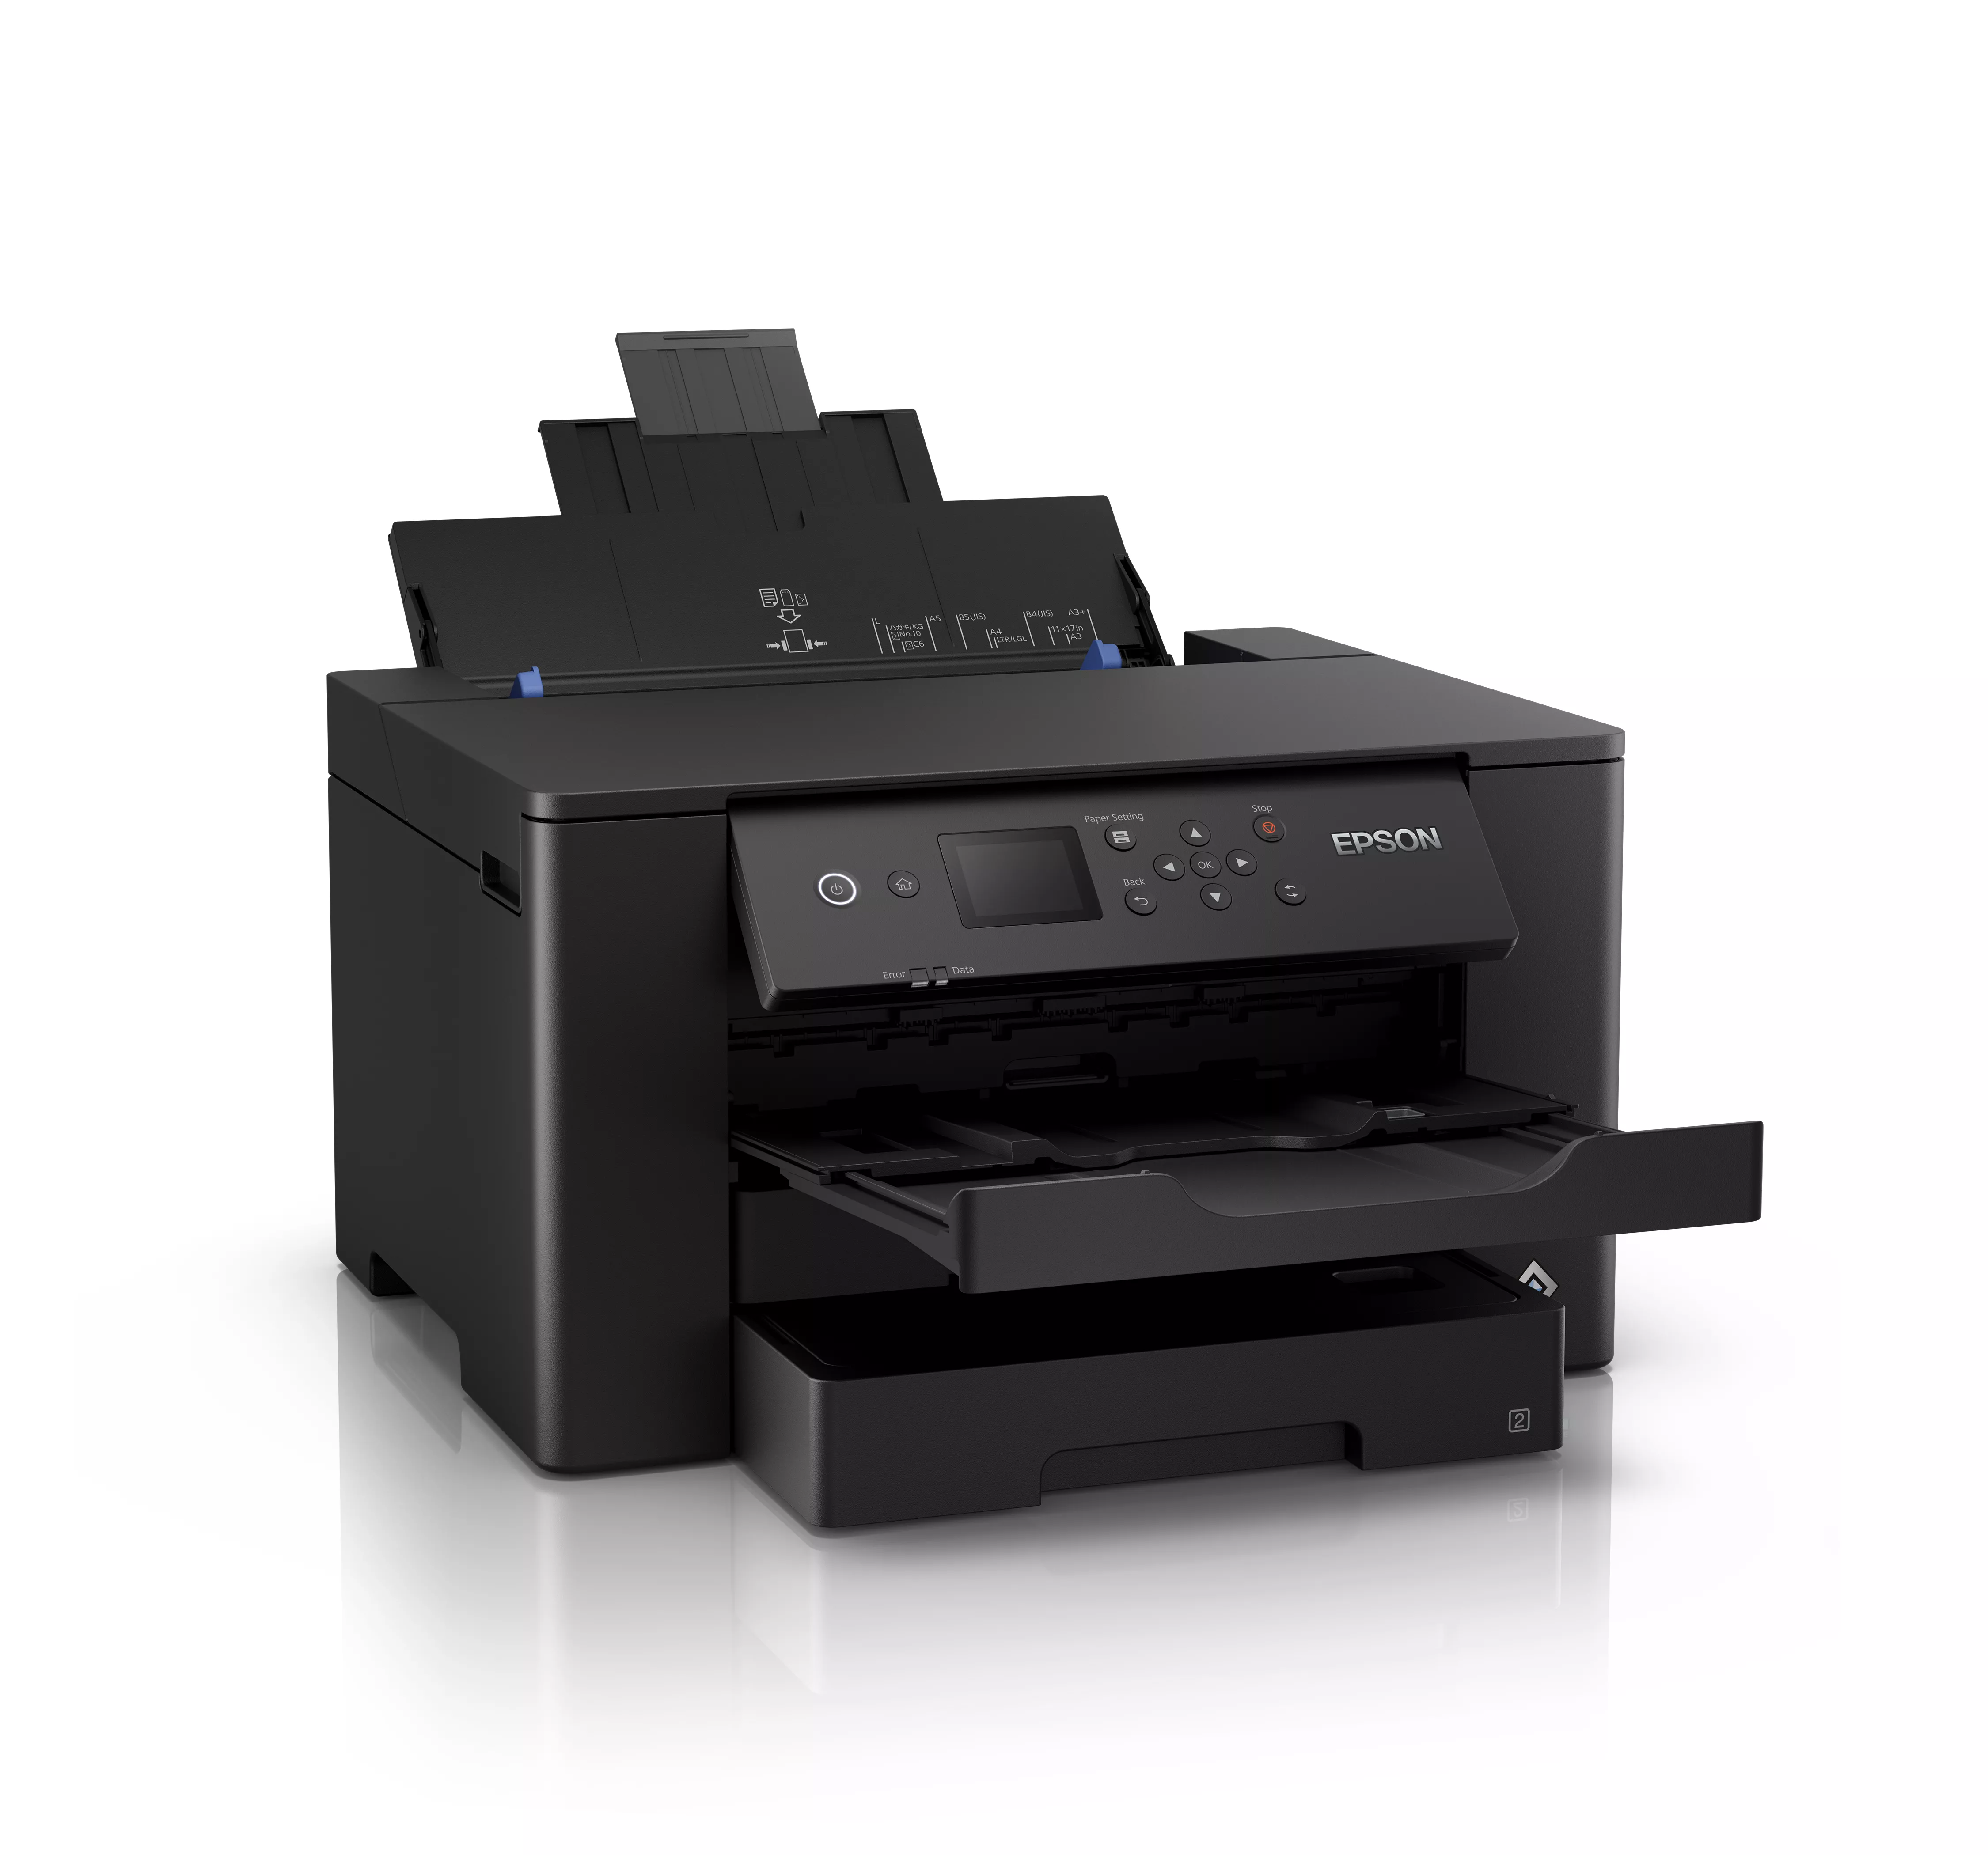 Vente EPSON WorkForce WF-7310DTW A3 inkjet printer 21 ppm Epson au meilleur prix - visuel 2